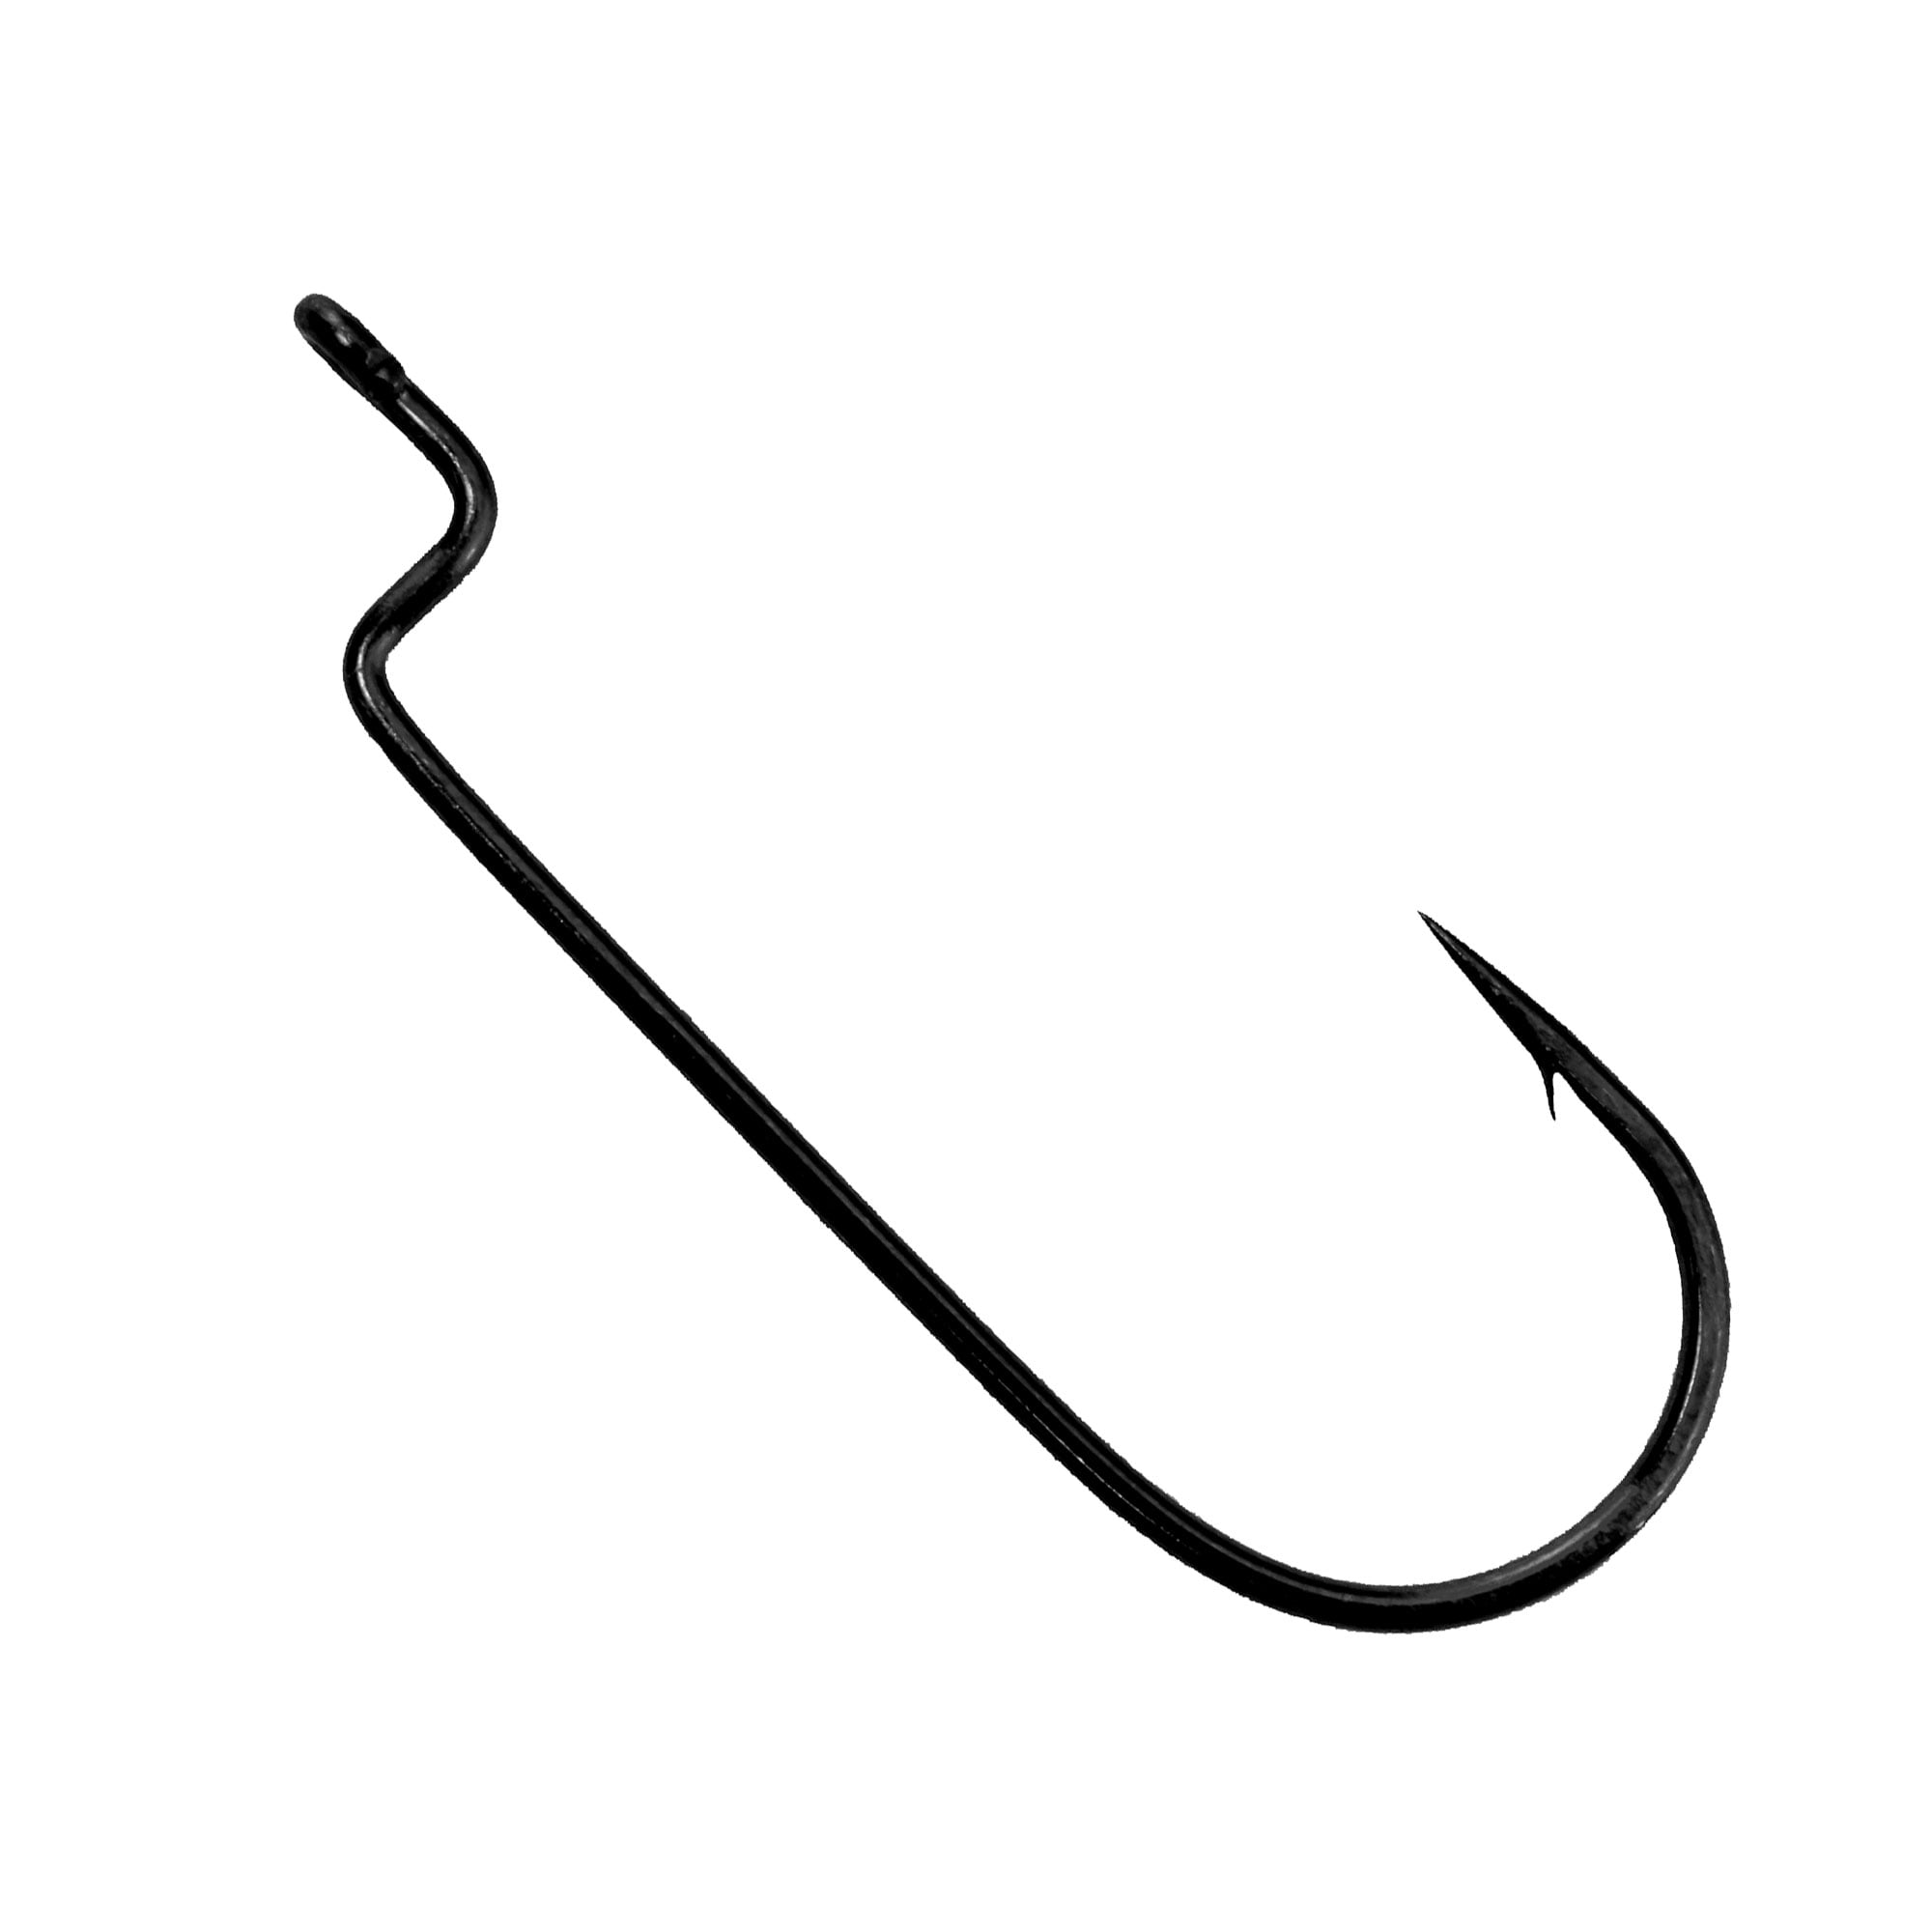 Aberdeen Sea Fishing hooks - 1/0, 2/0, 3/0, 4/0, 5/0 SALE - black nickel 